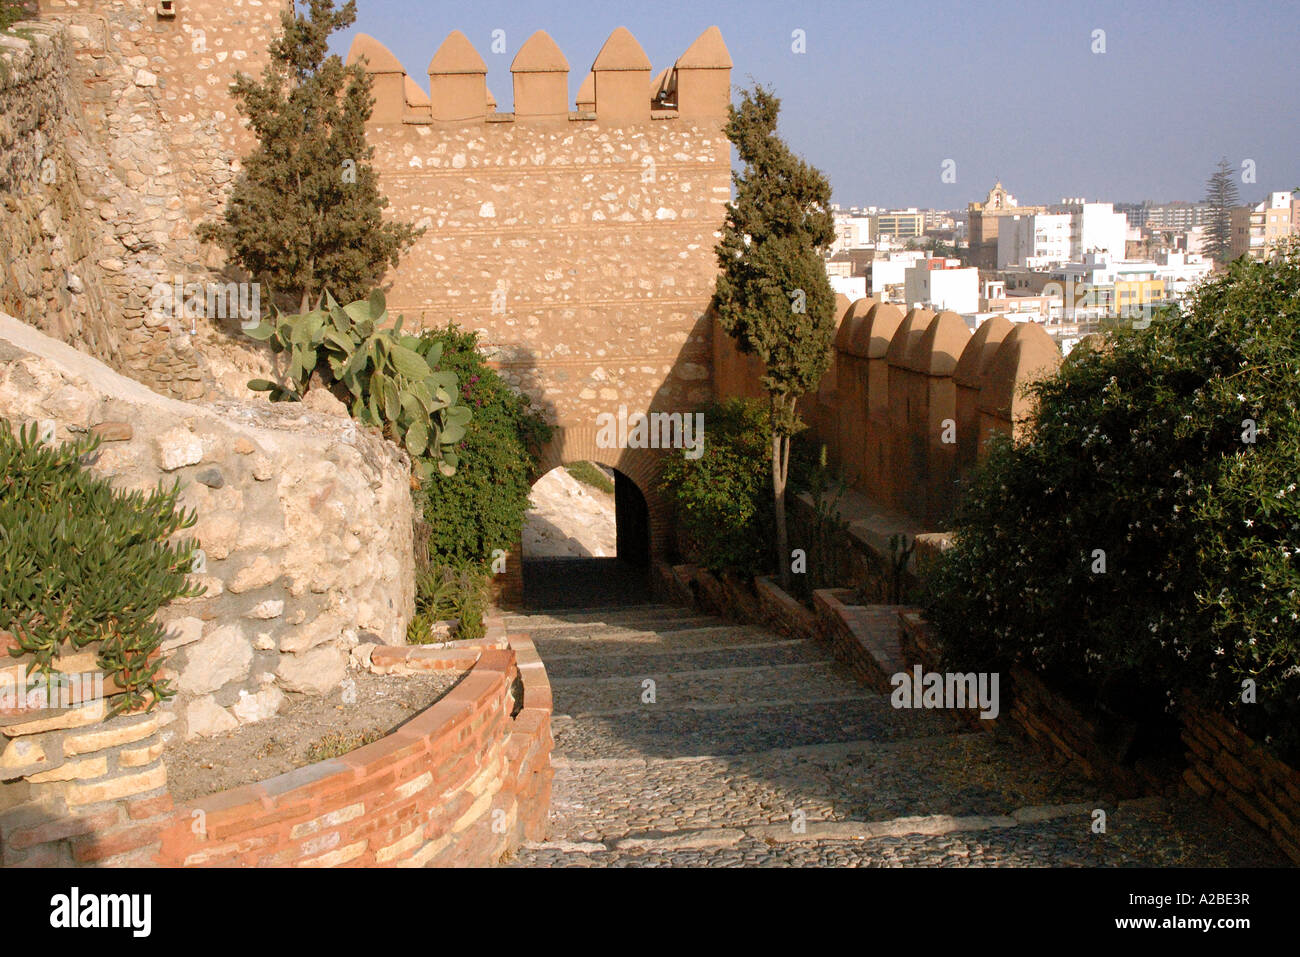 Panoramablick auf Almería Alcazaba Festung & Wände Almeria Andalusien Andalusien España Spanien Iberia Europa Stockfoto